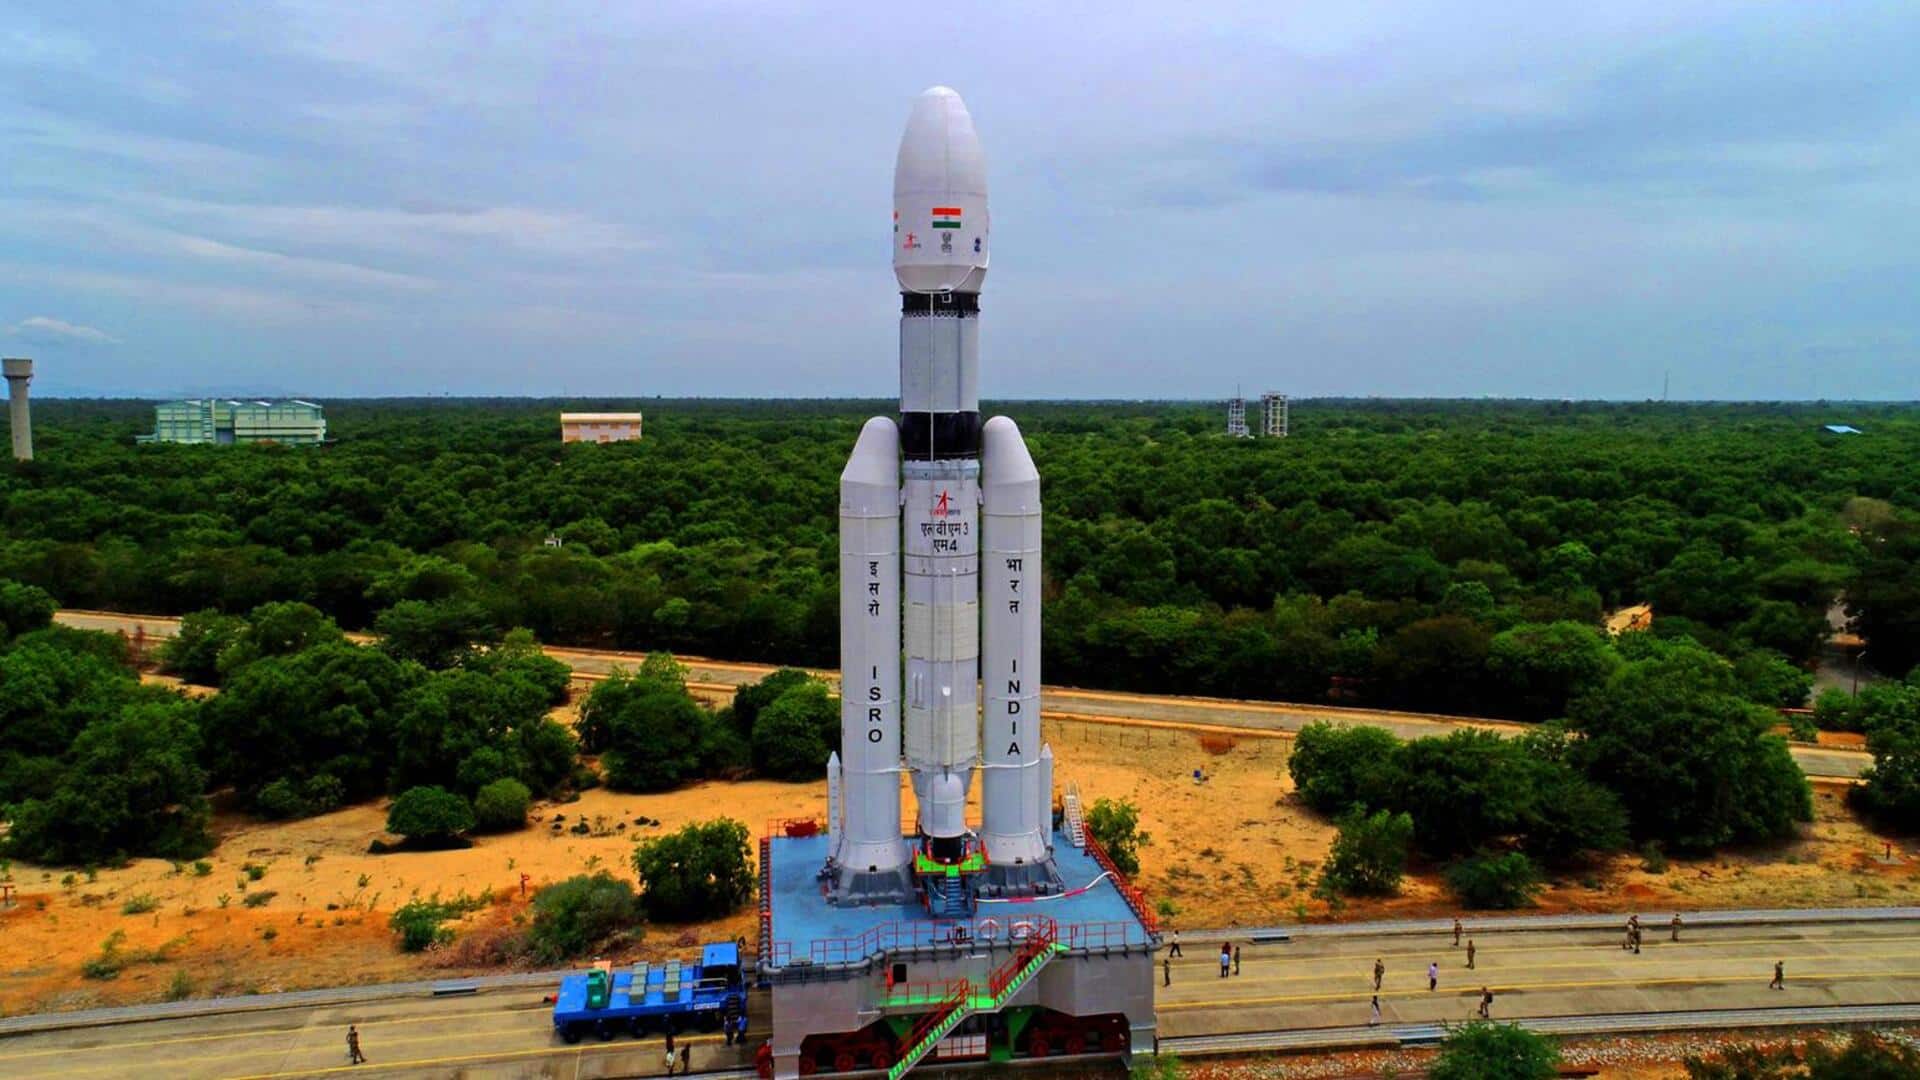 चंद्रयान-3 समस्या की स्थिति में दूसरी लैंडिंग साइट पर जाने में है सक्षम- ISRO प्रमुख